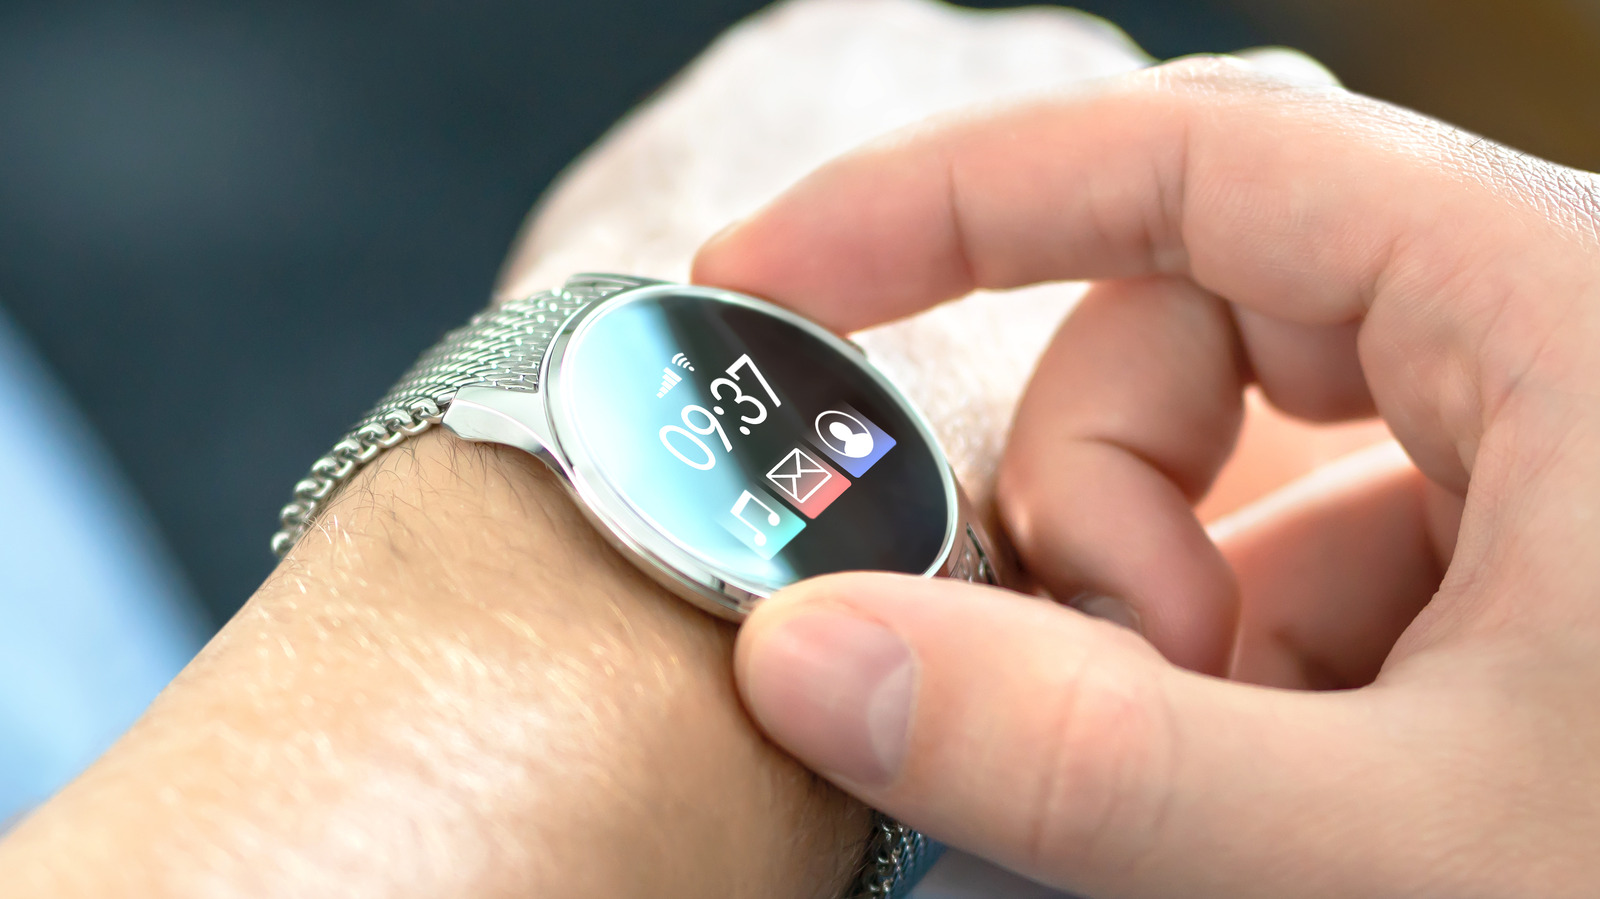 Put on OS está finalmente recebendo o chip Smartwatch para assumir totalmente o Apple Watch